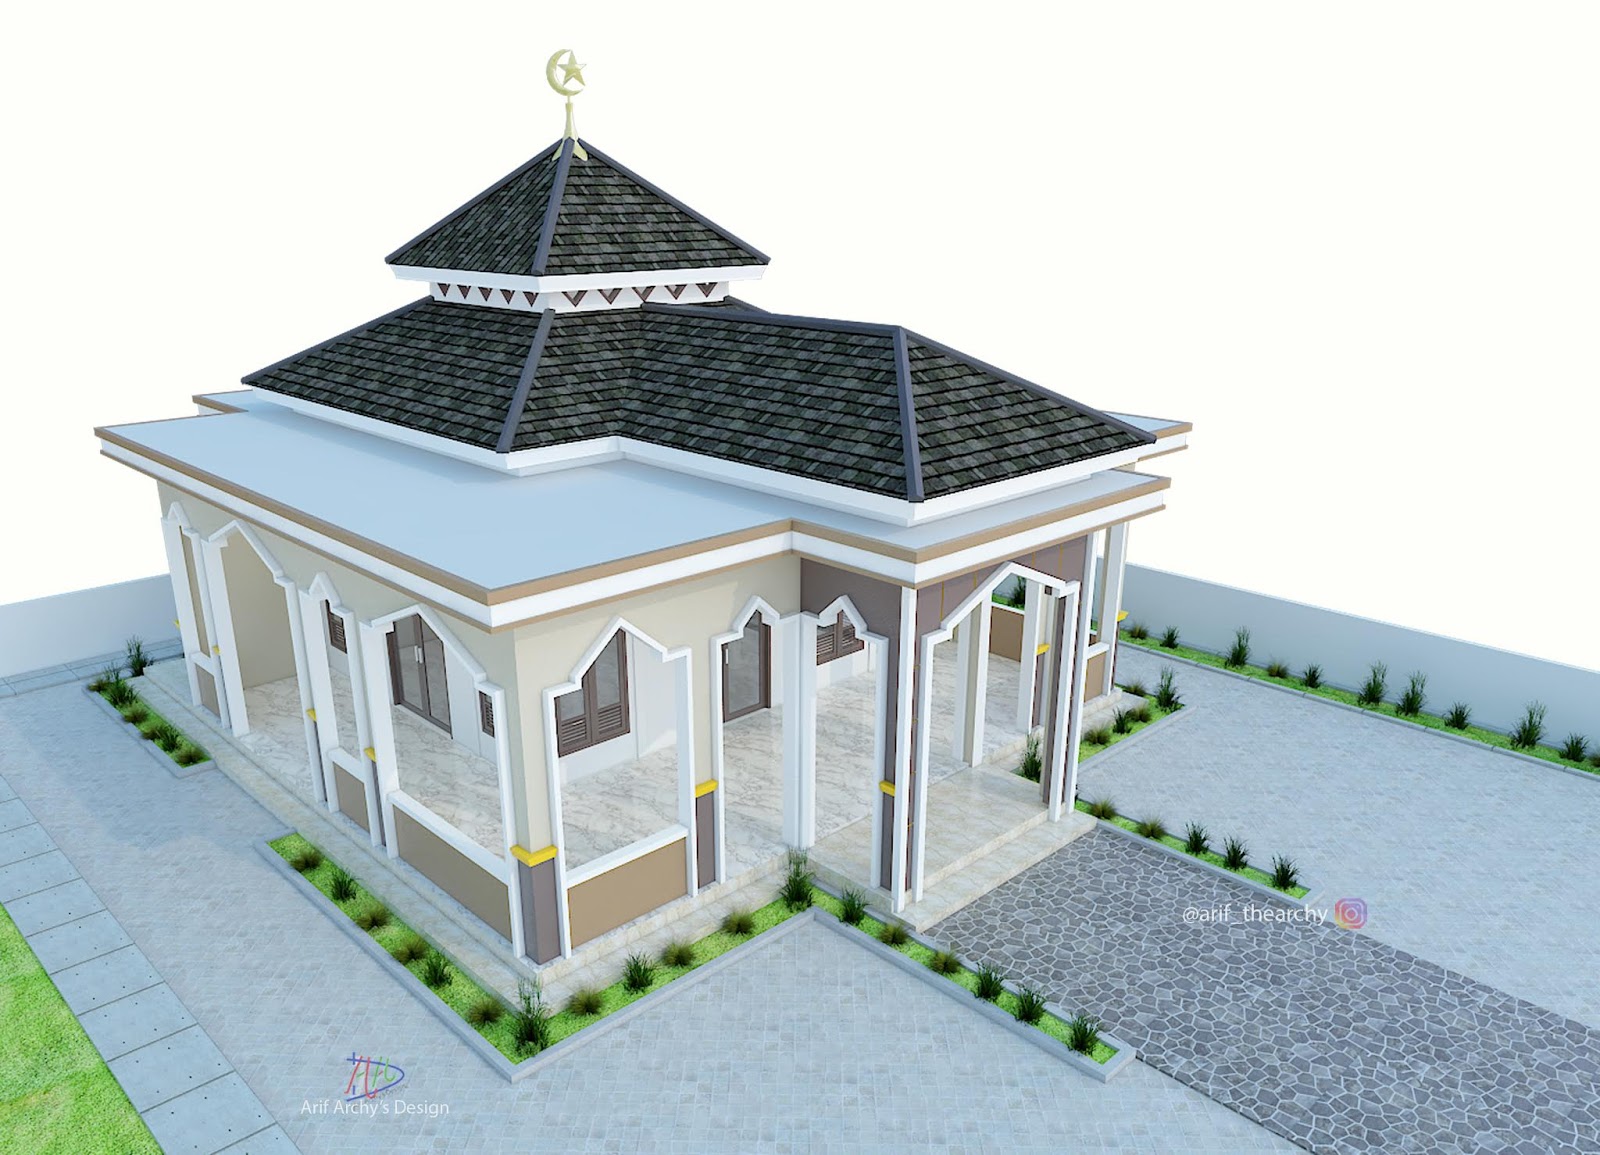 Desain Masjid dan Mushollah